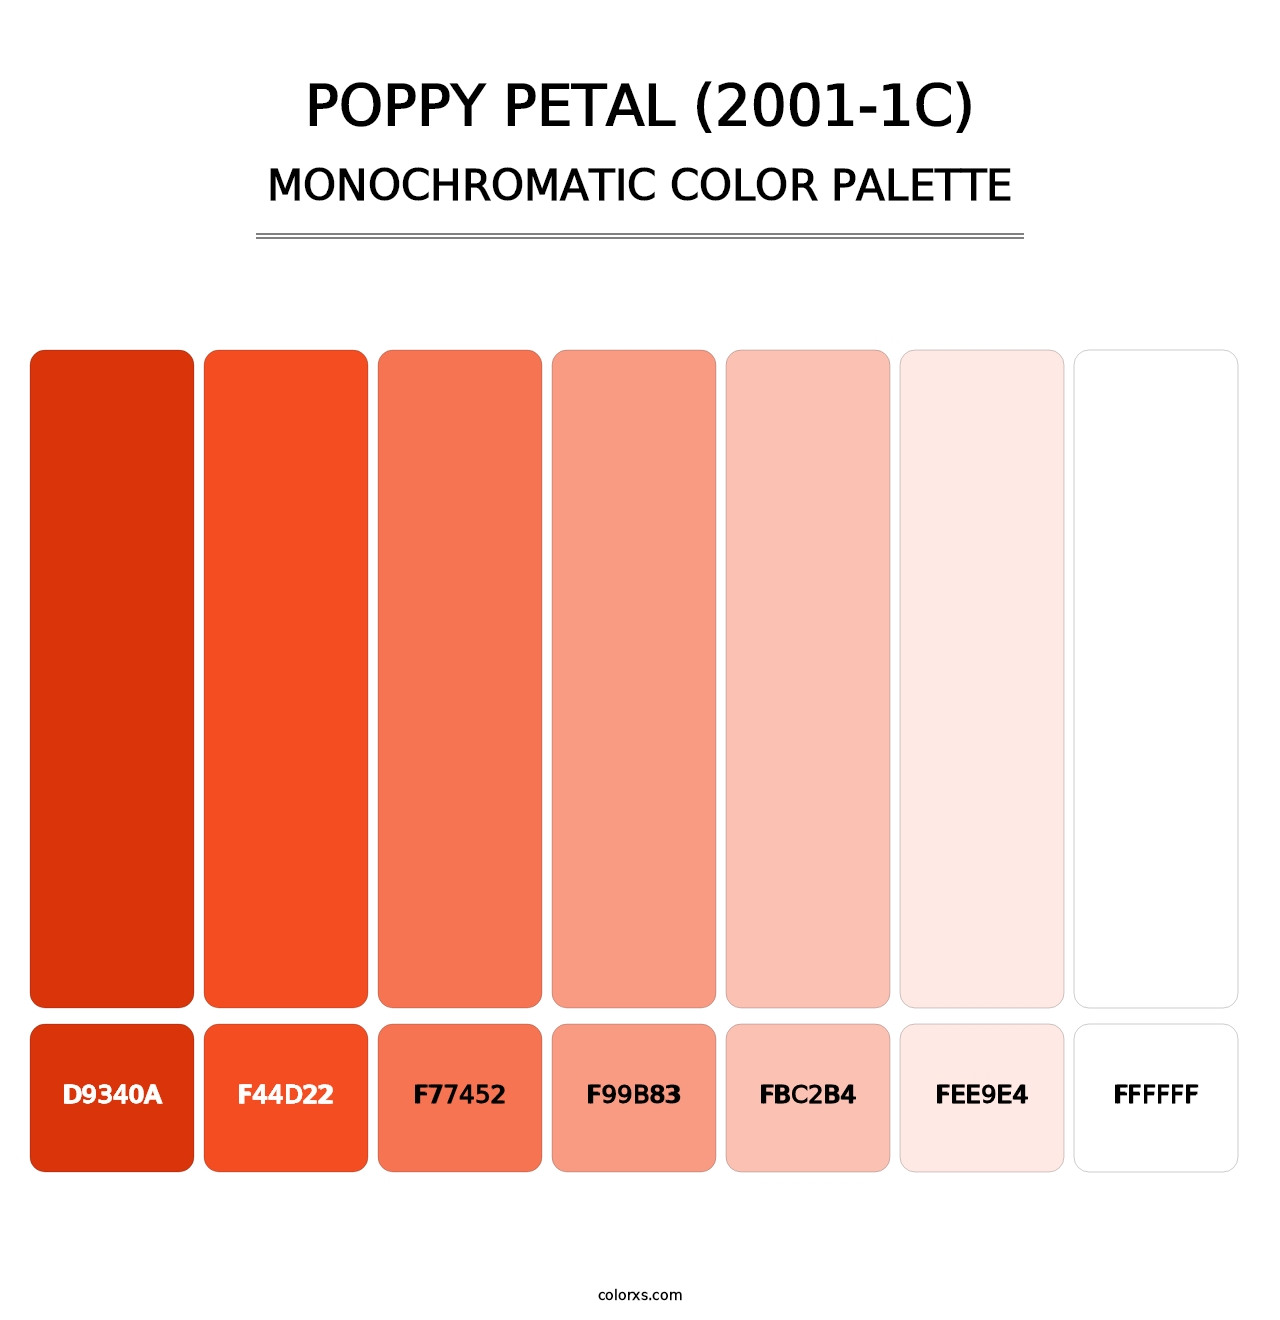 Poppy Petal (2001-1C) - Monochromatic Color Palette